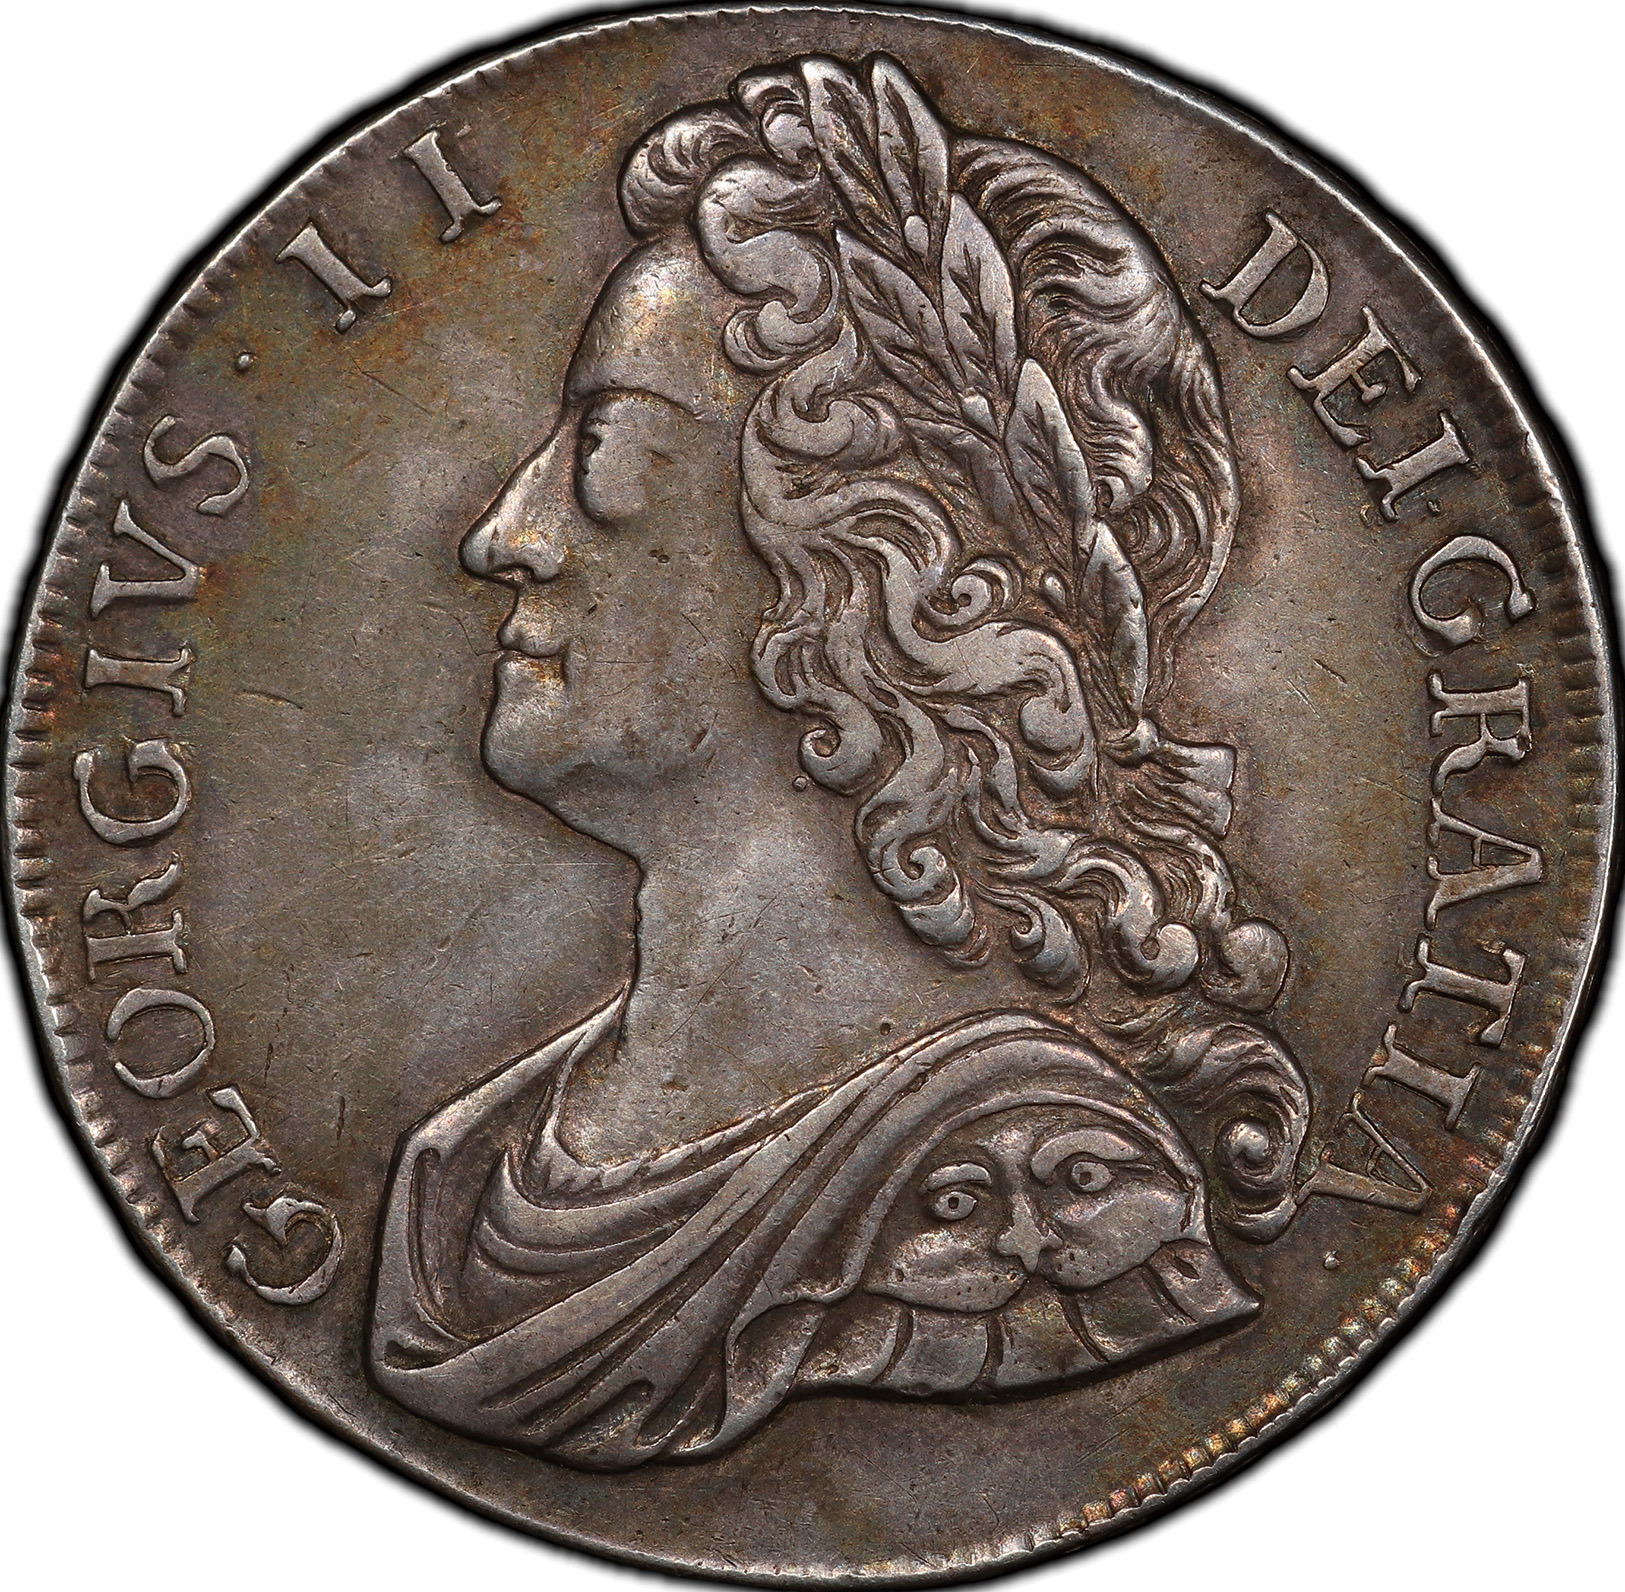 英国 (Great Britain) ジョージ2世像 1クラウン銀貨 1741年 KM575.2 